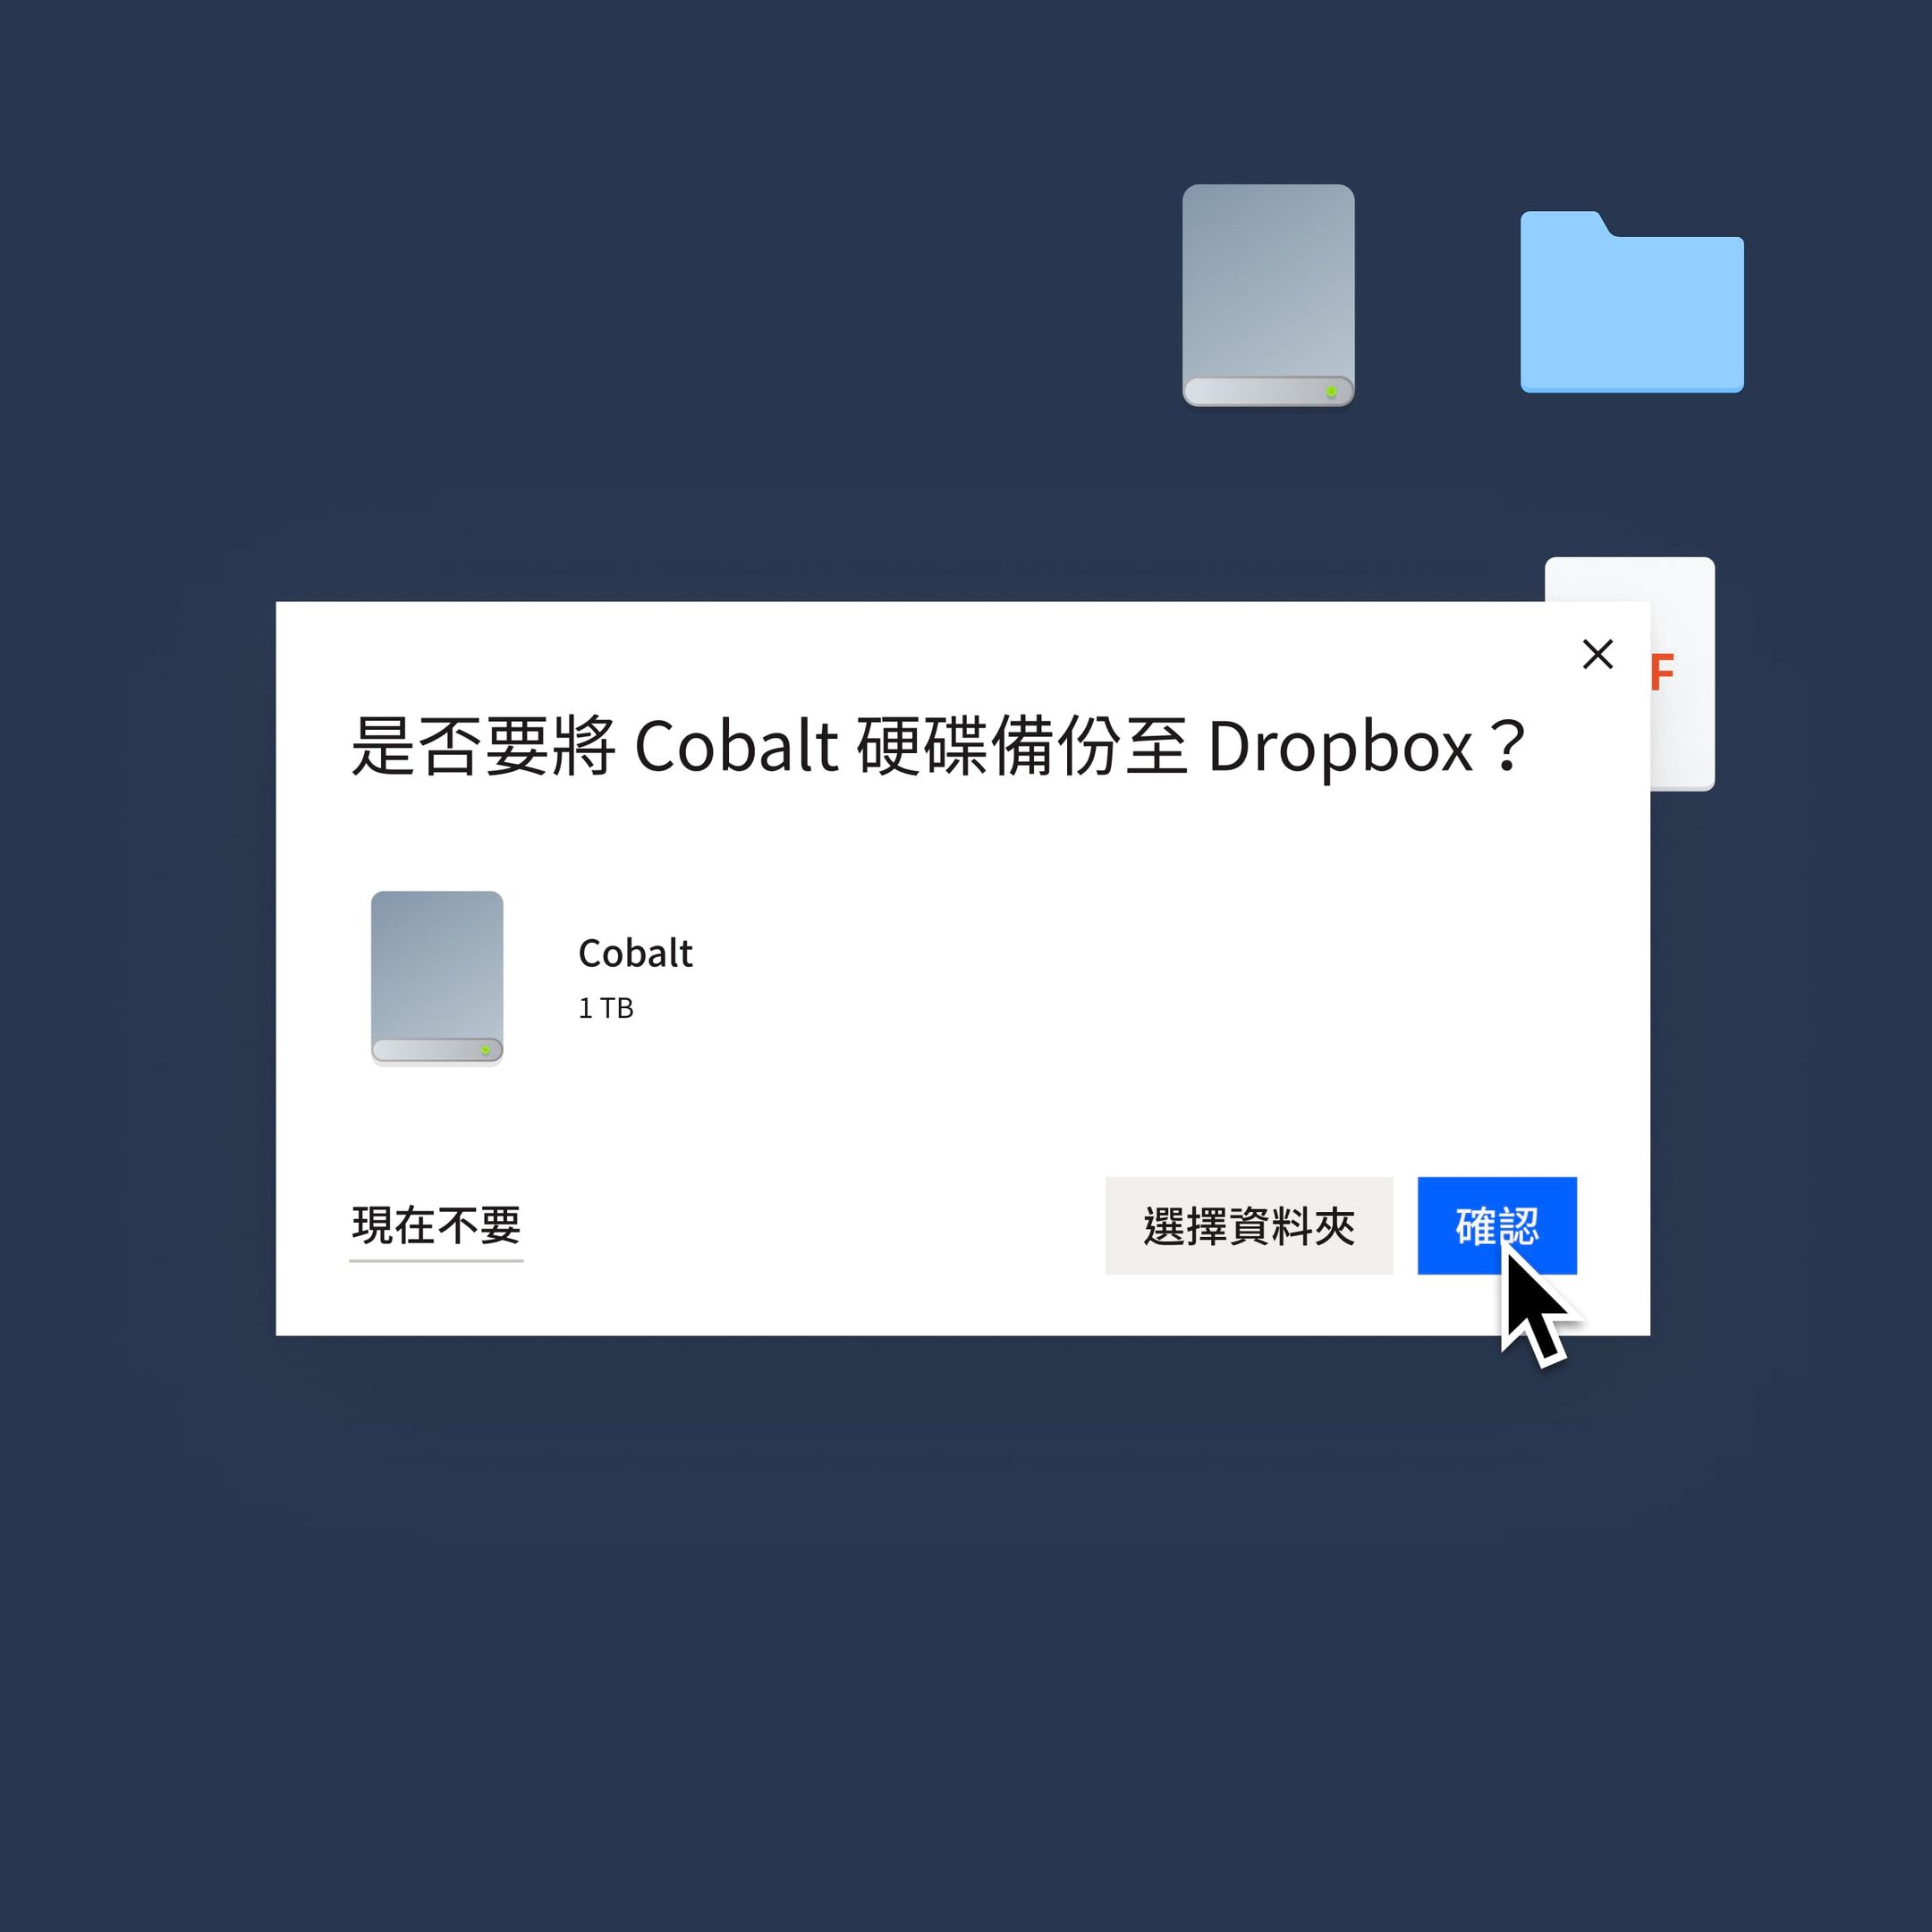 使用者點選藍色的「確認」按鈕，將 Cobalt 硬碟備份至 Dropbox